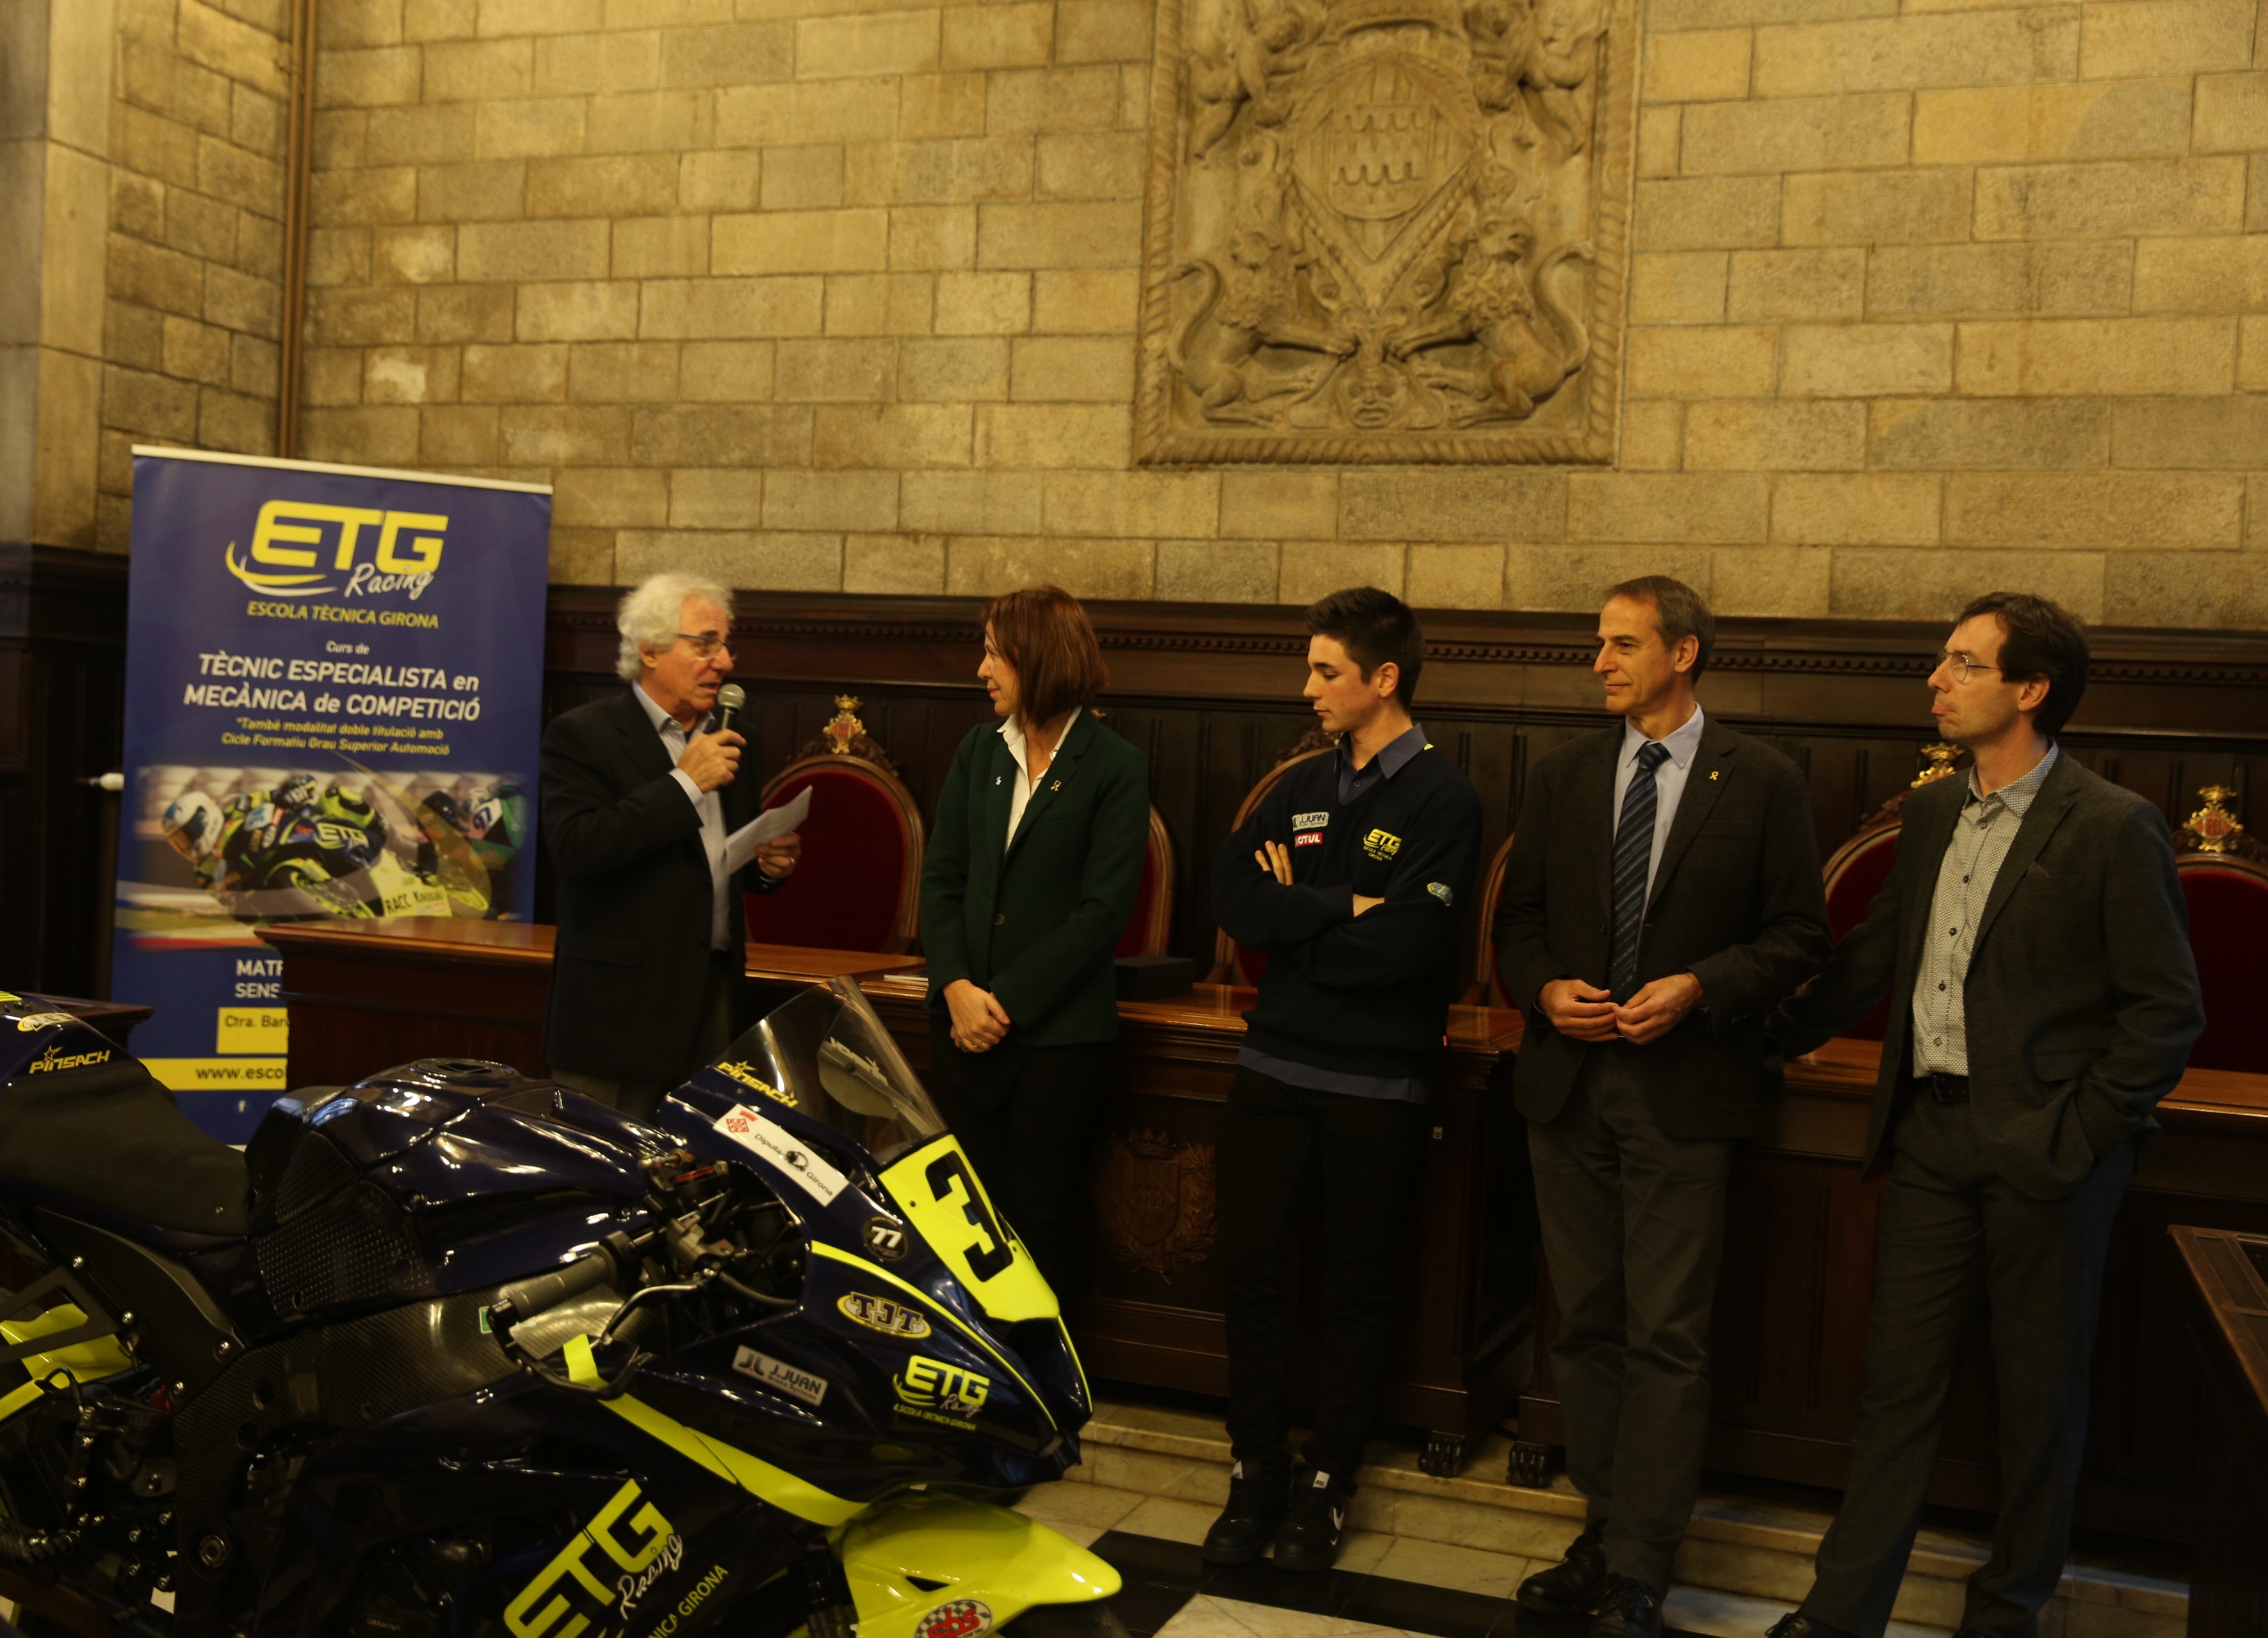 L'Ajuntament de Girona reconeix el mèrit esportiu del pilot Xavi Pinsach i de l'equip ETG Racing